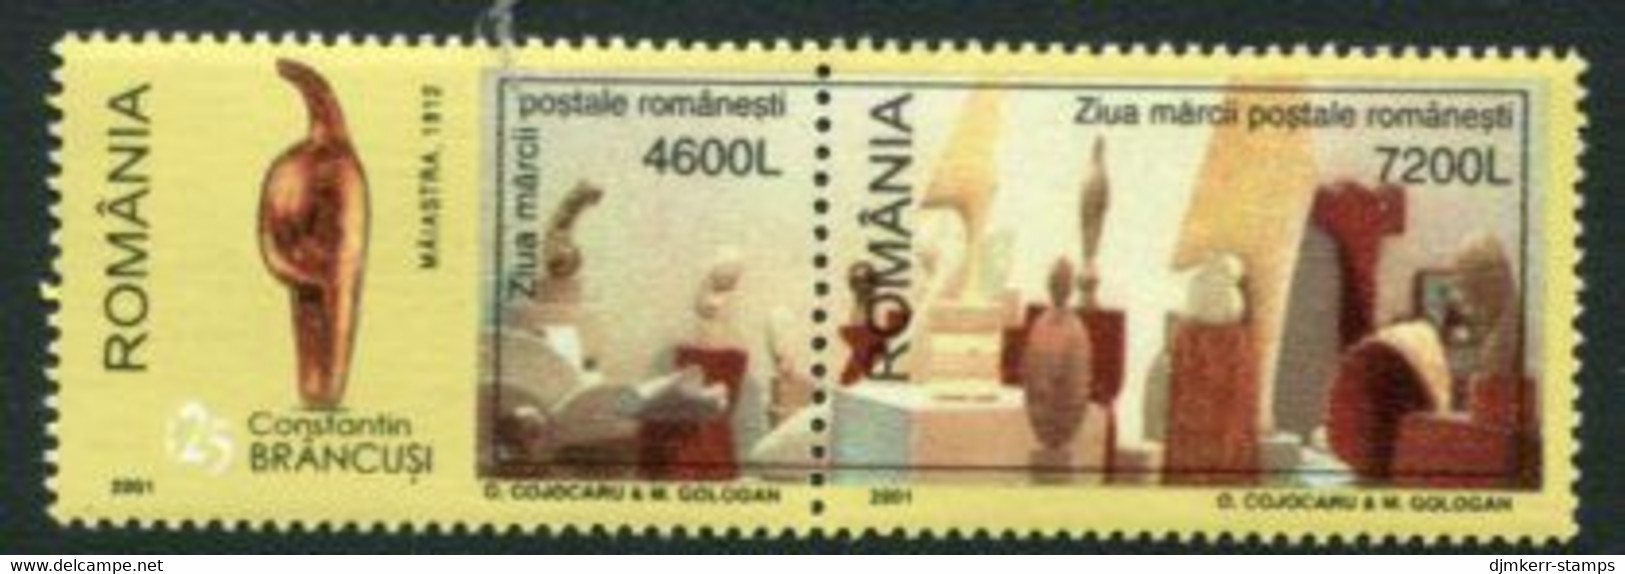 ROMANIA 2001 Stamp Day MNH / **.  Michel 5550-51 - Ongebruikt